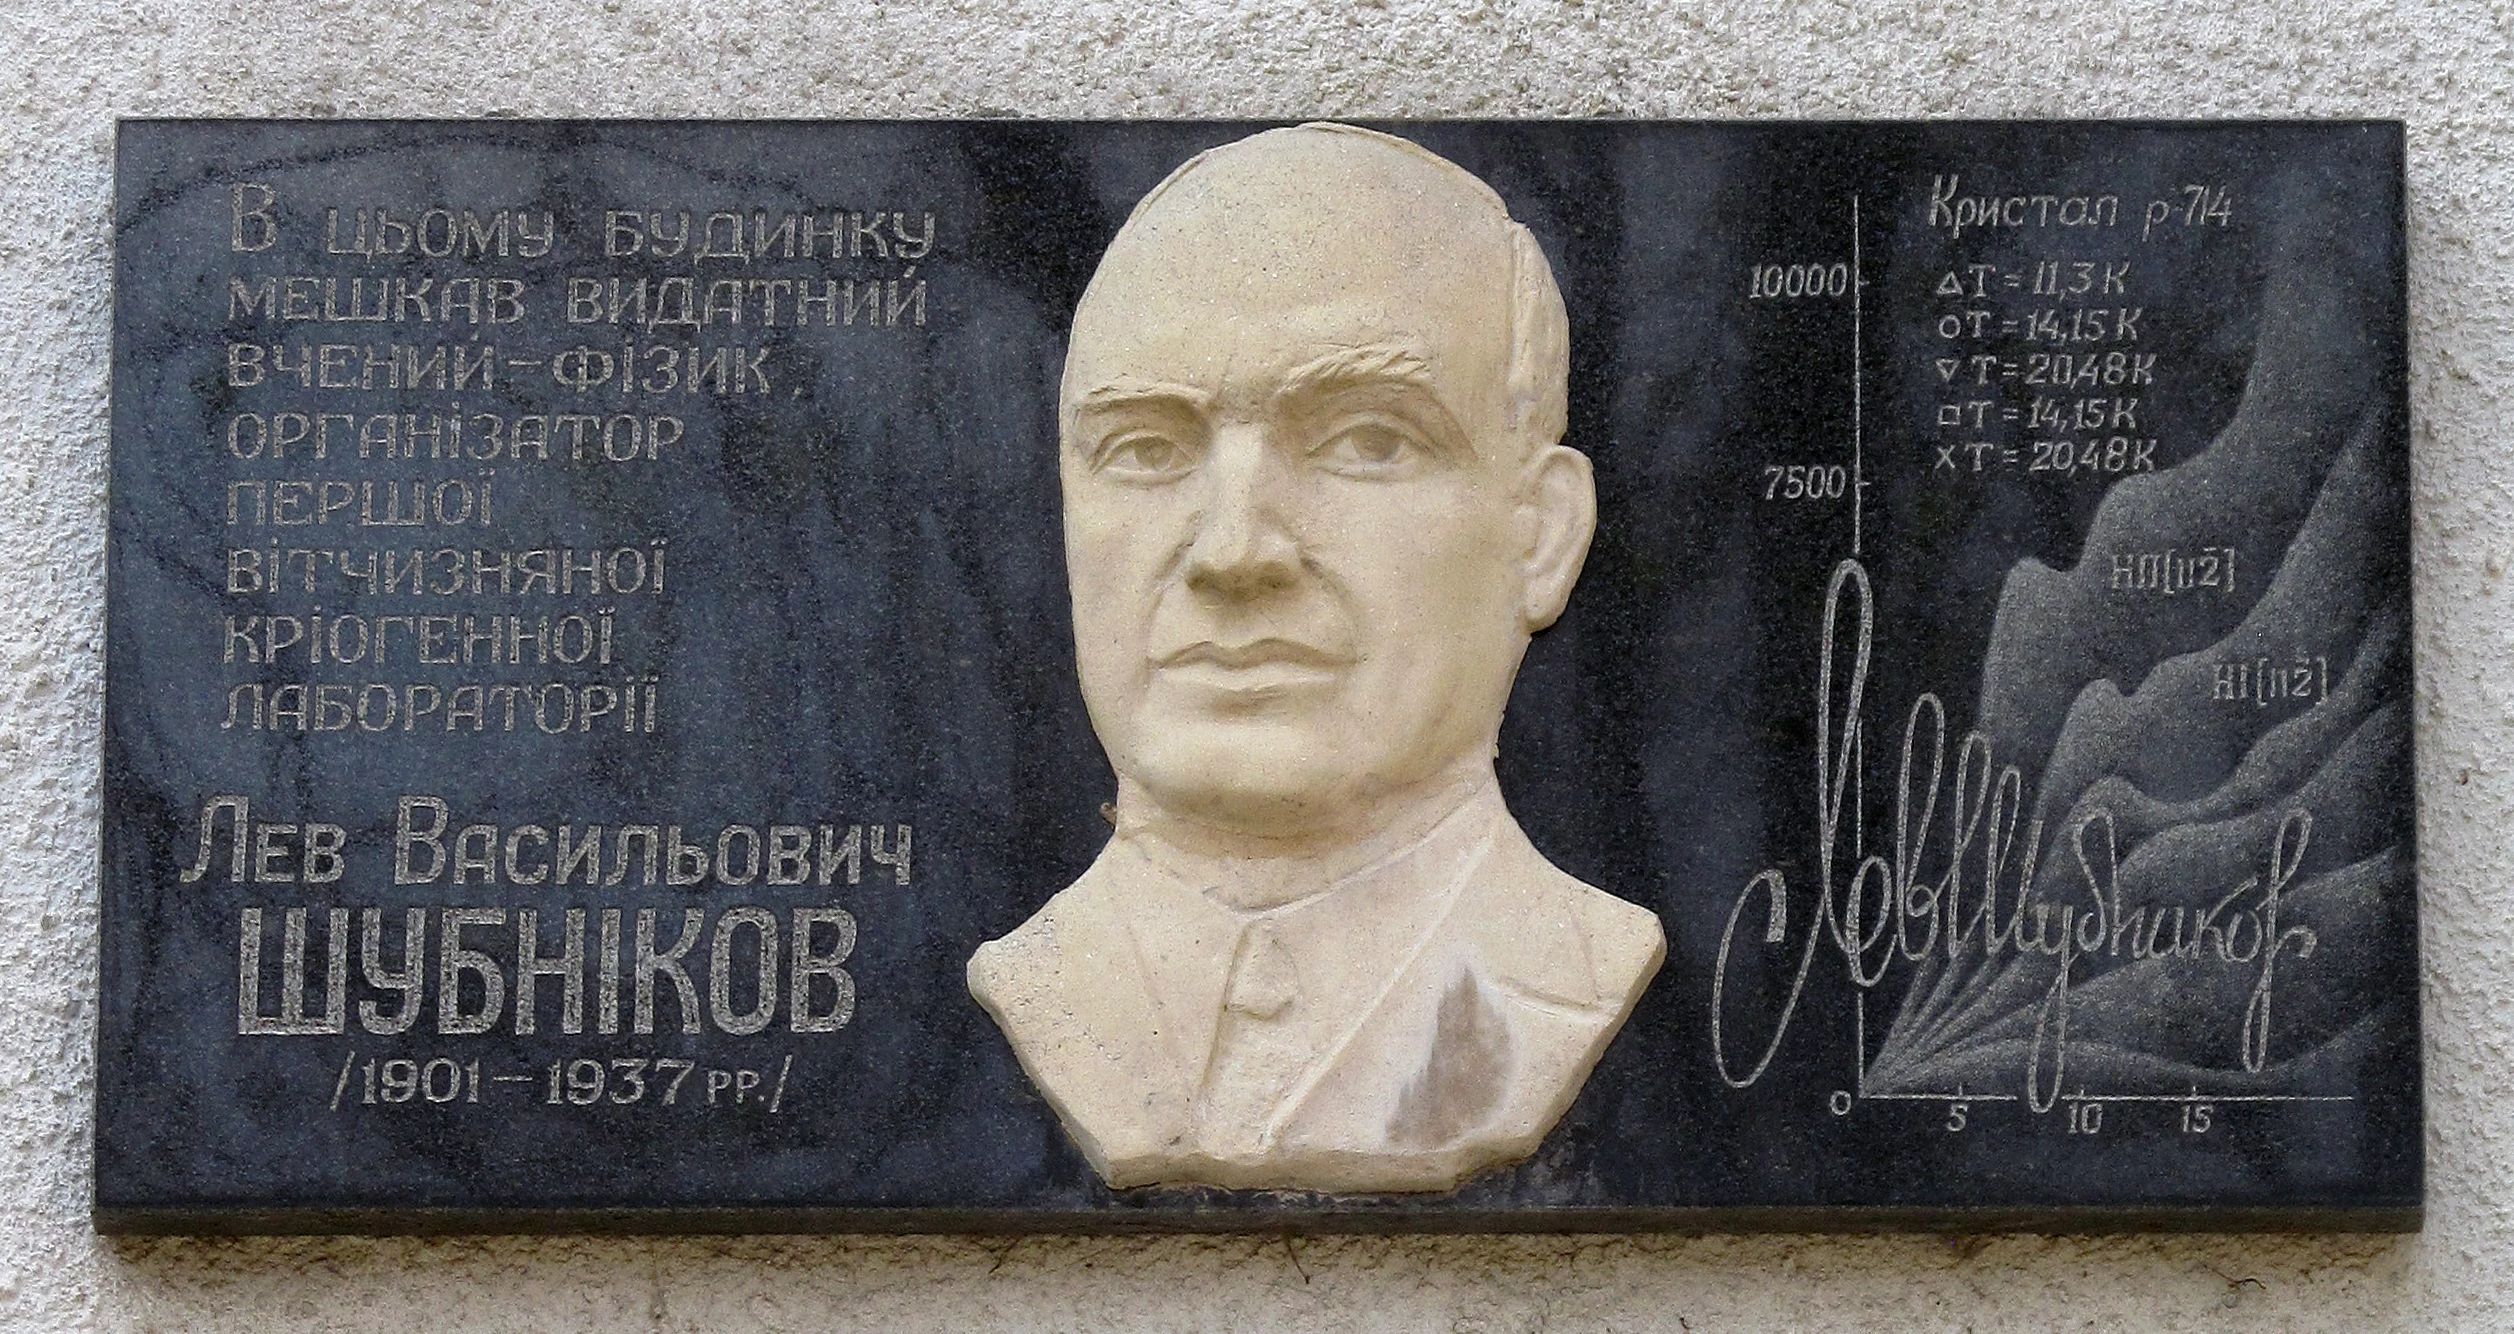 Шубников мемориальная доска в Харькове